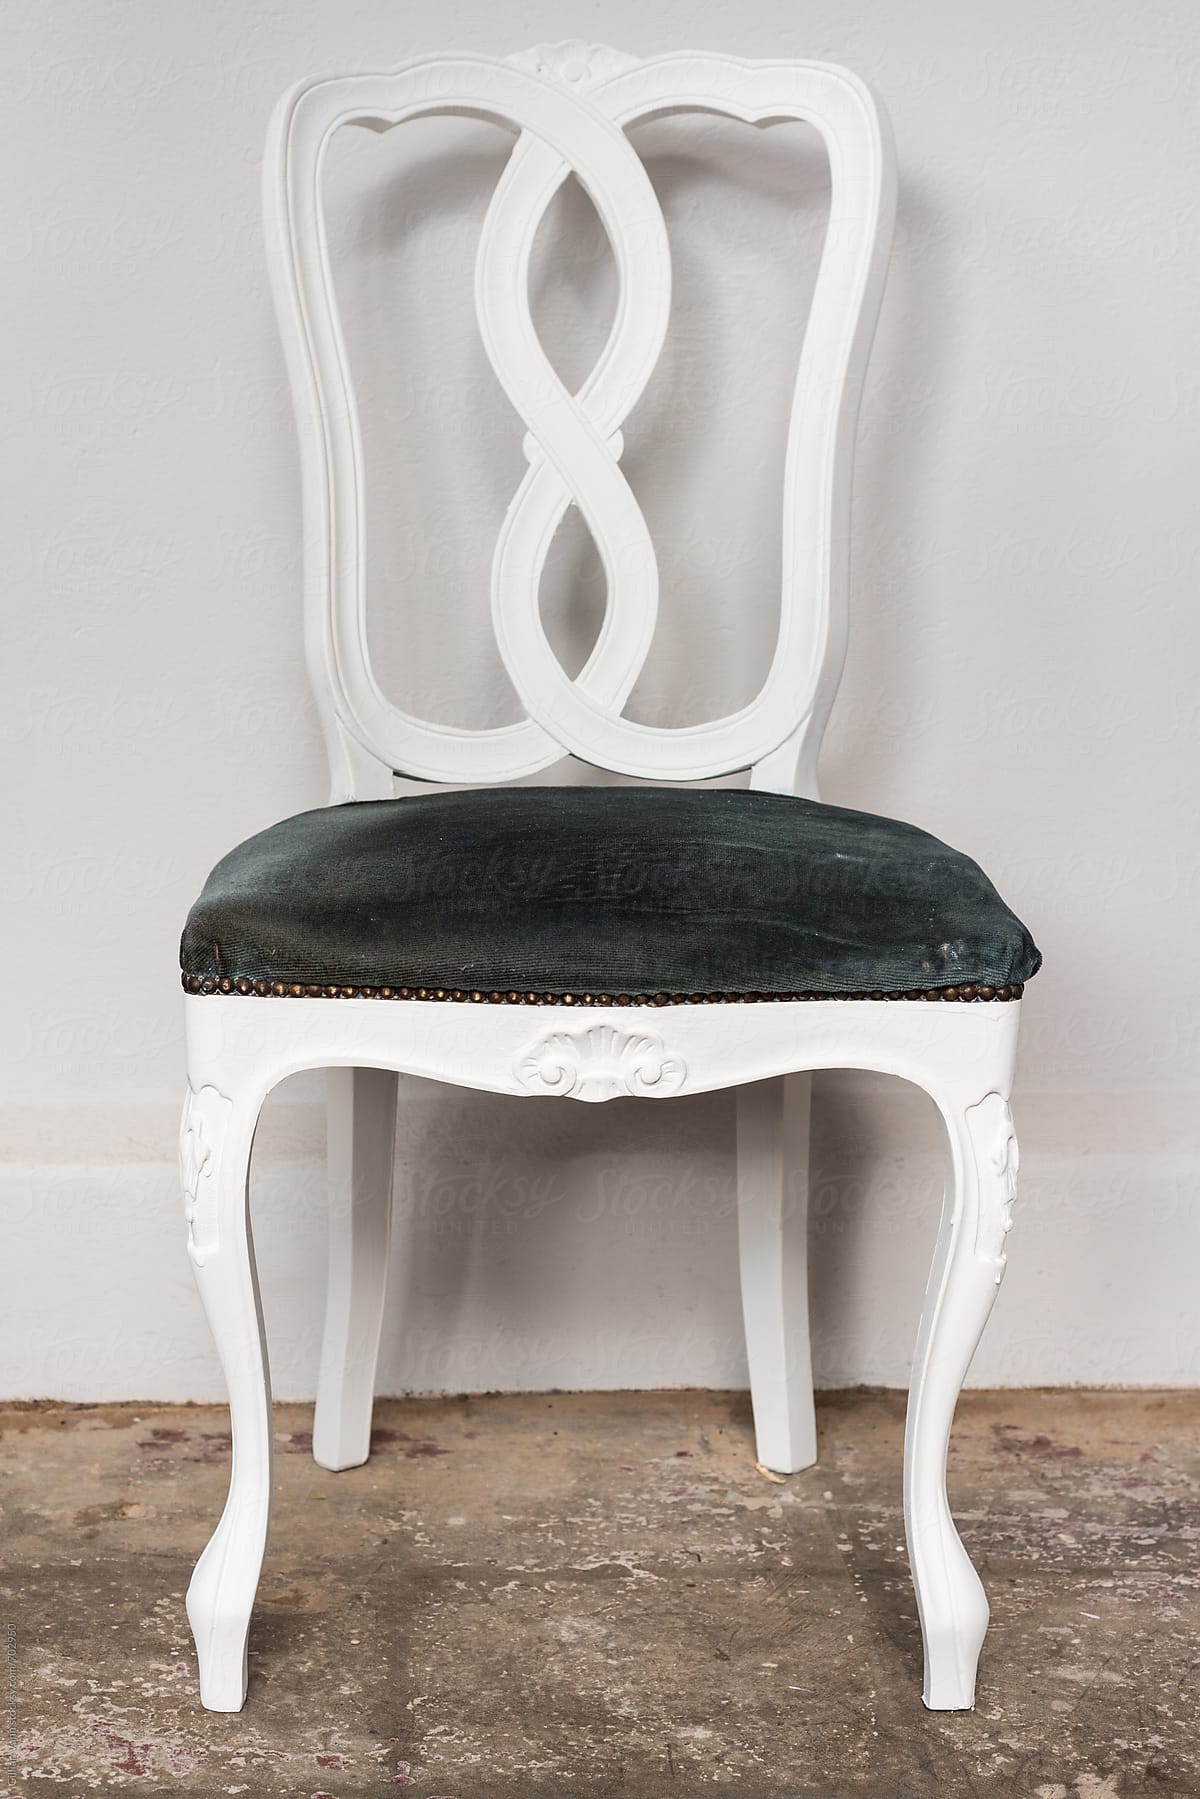 white vintage chair against a plain wall,